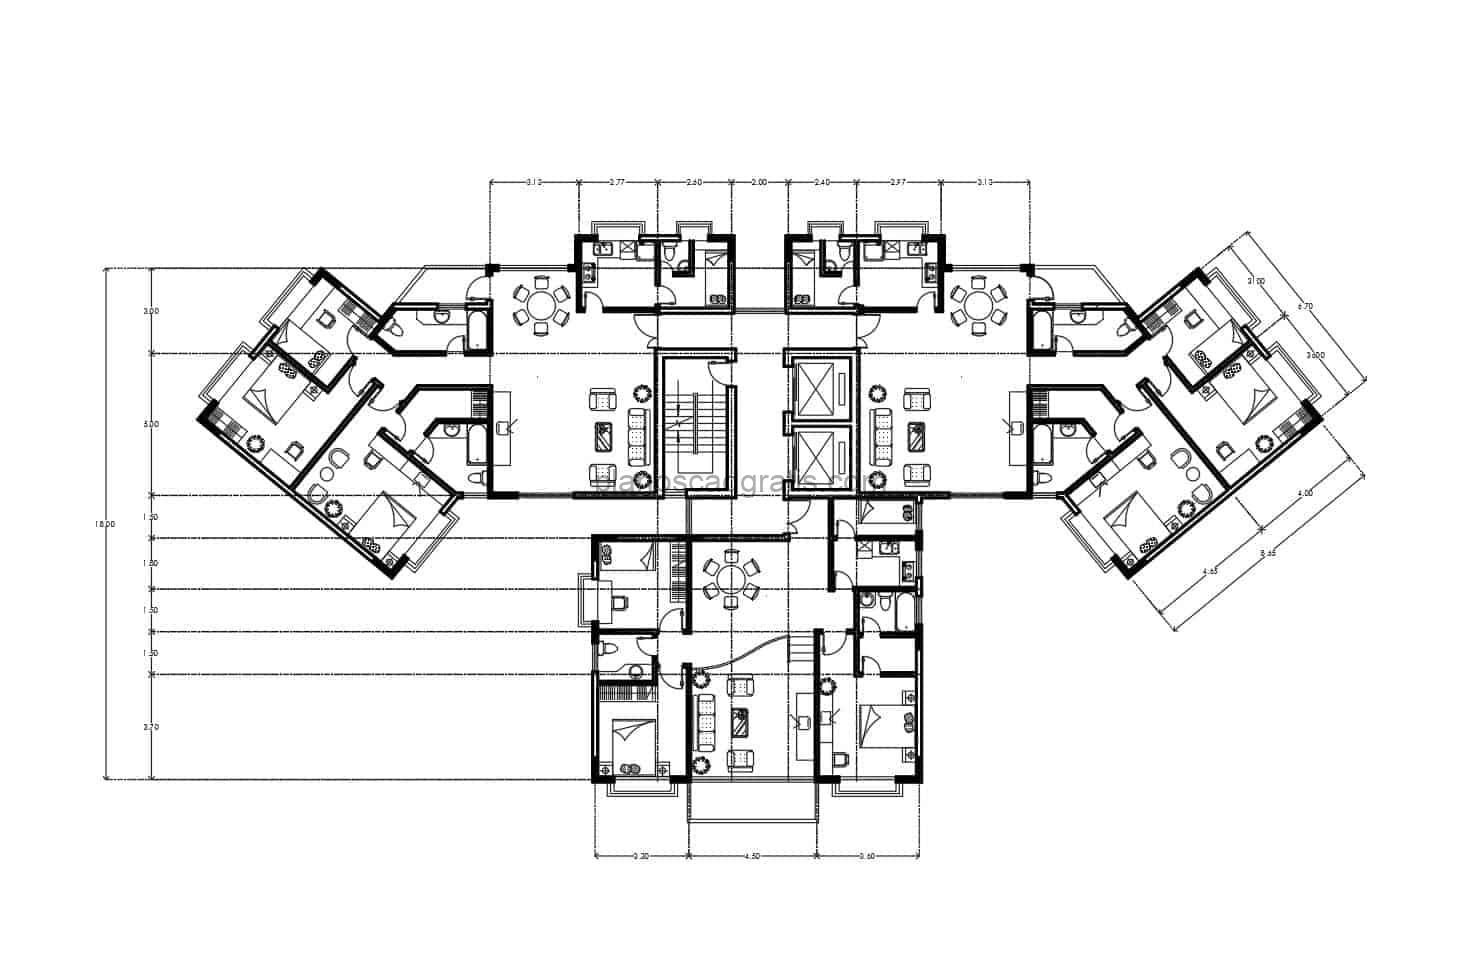 planos de apartamento residencial en bloques de dos habitaciones, planos de autocad formato dwg con medidas y mobiliario de interior en bloques cad para descaga gratis